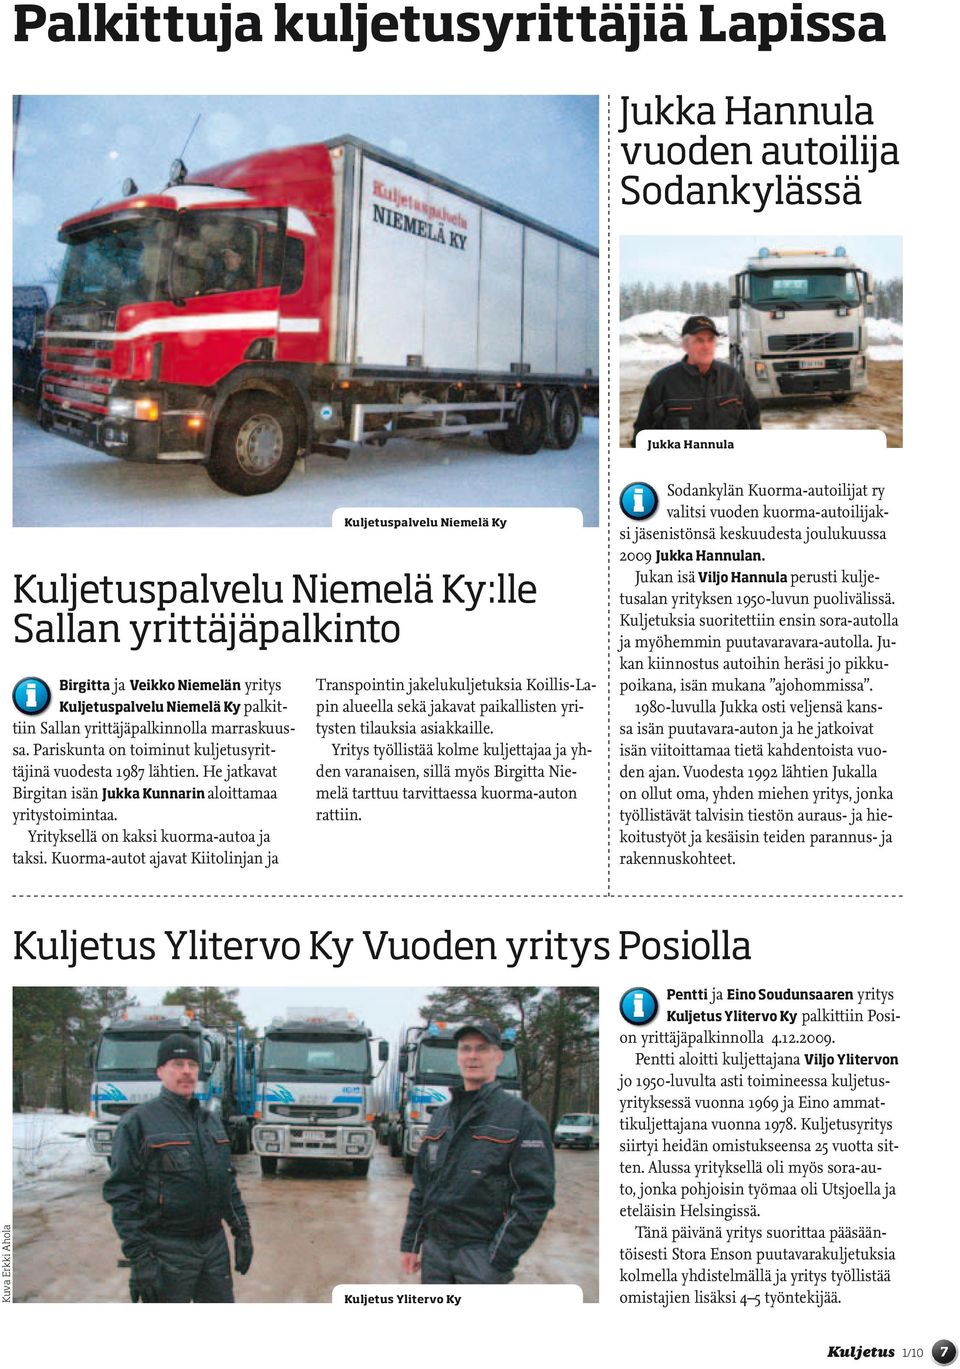 He jatkavat Birgitan isän Jukka Kunnarin aloittamaa yritystoimintaa. Yrityksellä on kaksi kuorma-autoa ja taksi.